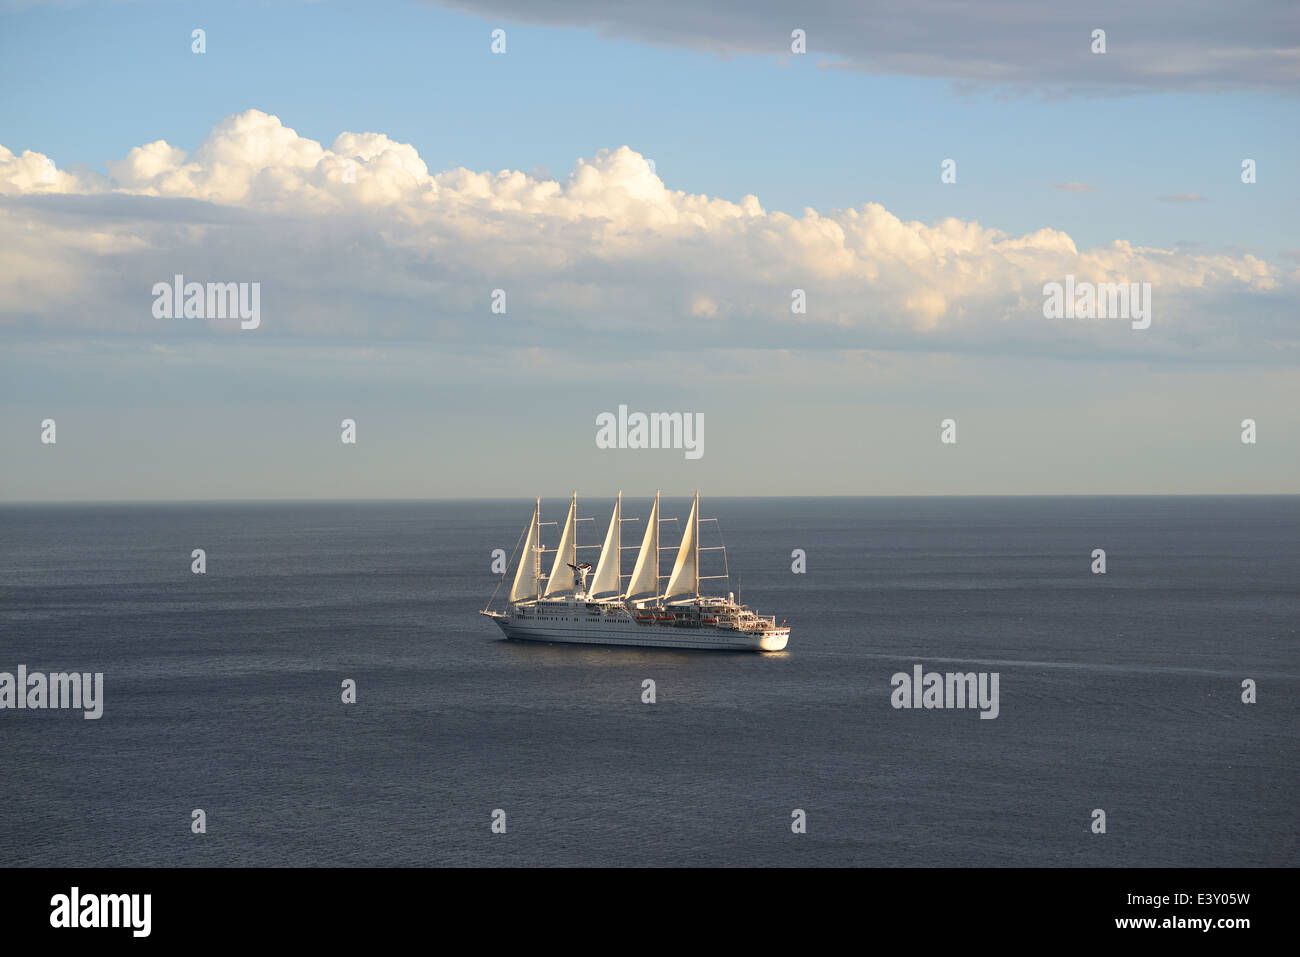 Club Med 2, la nave a vela più lunga del mondo (dal 2014) a 194 metri al largo della costa di Nizza, Alpes-Maritimes, Costa Azzurra, Francia. Foto Stock